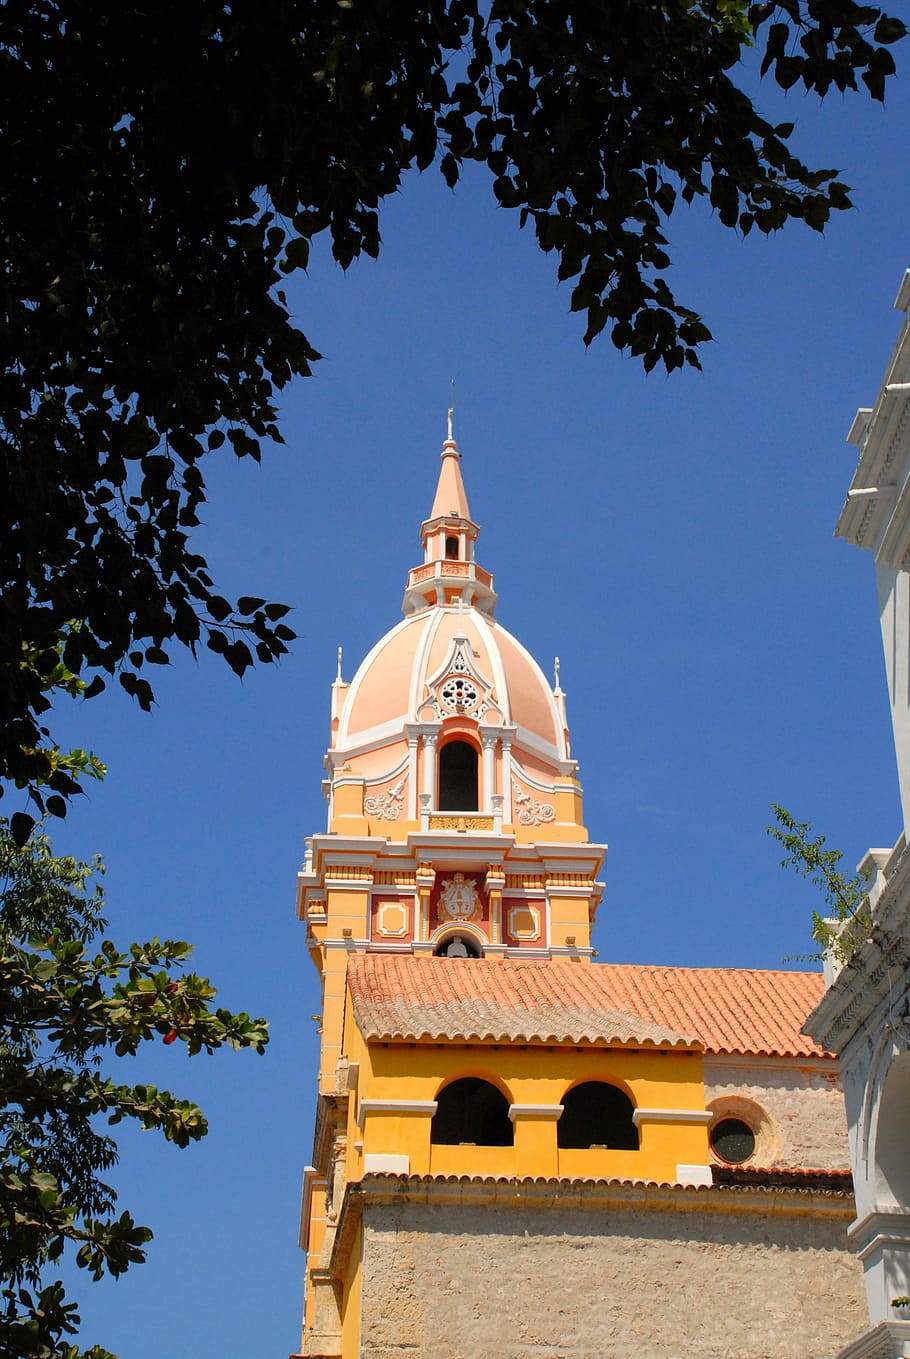 Cúpula, Cartagena, Colombia, Iglesia, fachada, religión, arquitectura, árbol, historia, azul